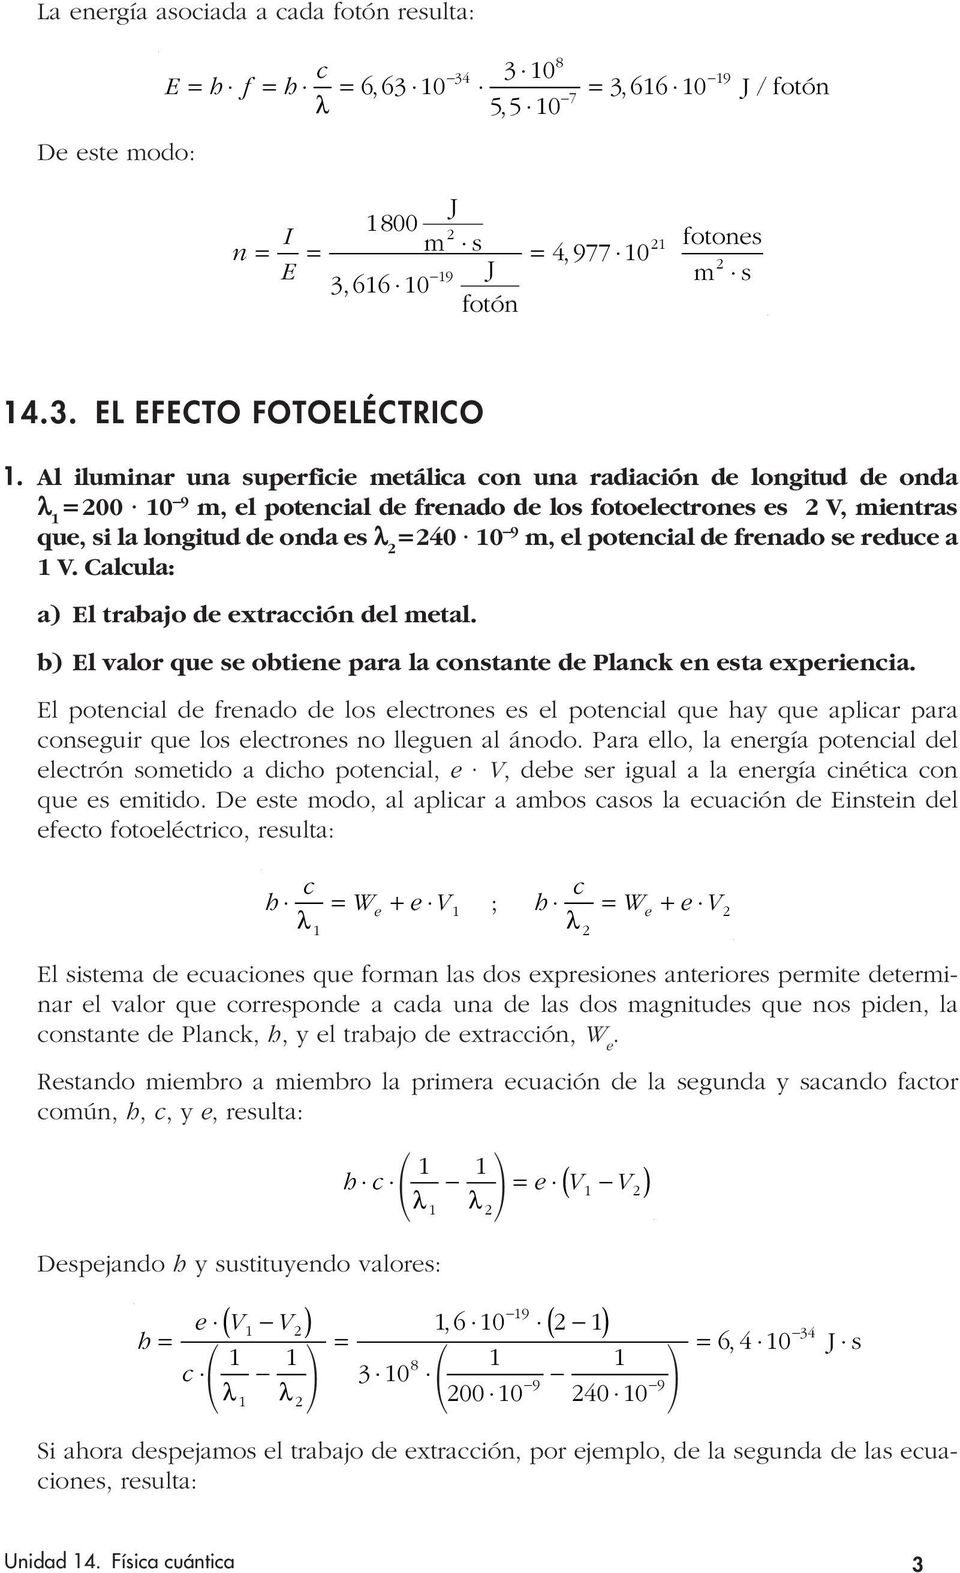 Calcula: a) El trabajo d xtracción dl mtal. b) El valor qu s obtin ara la constant d Planck n sta xrincia.